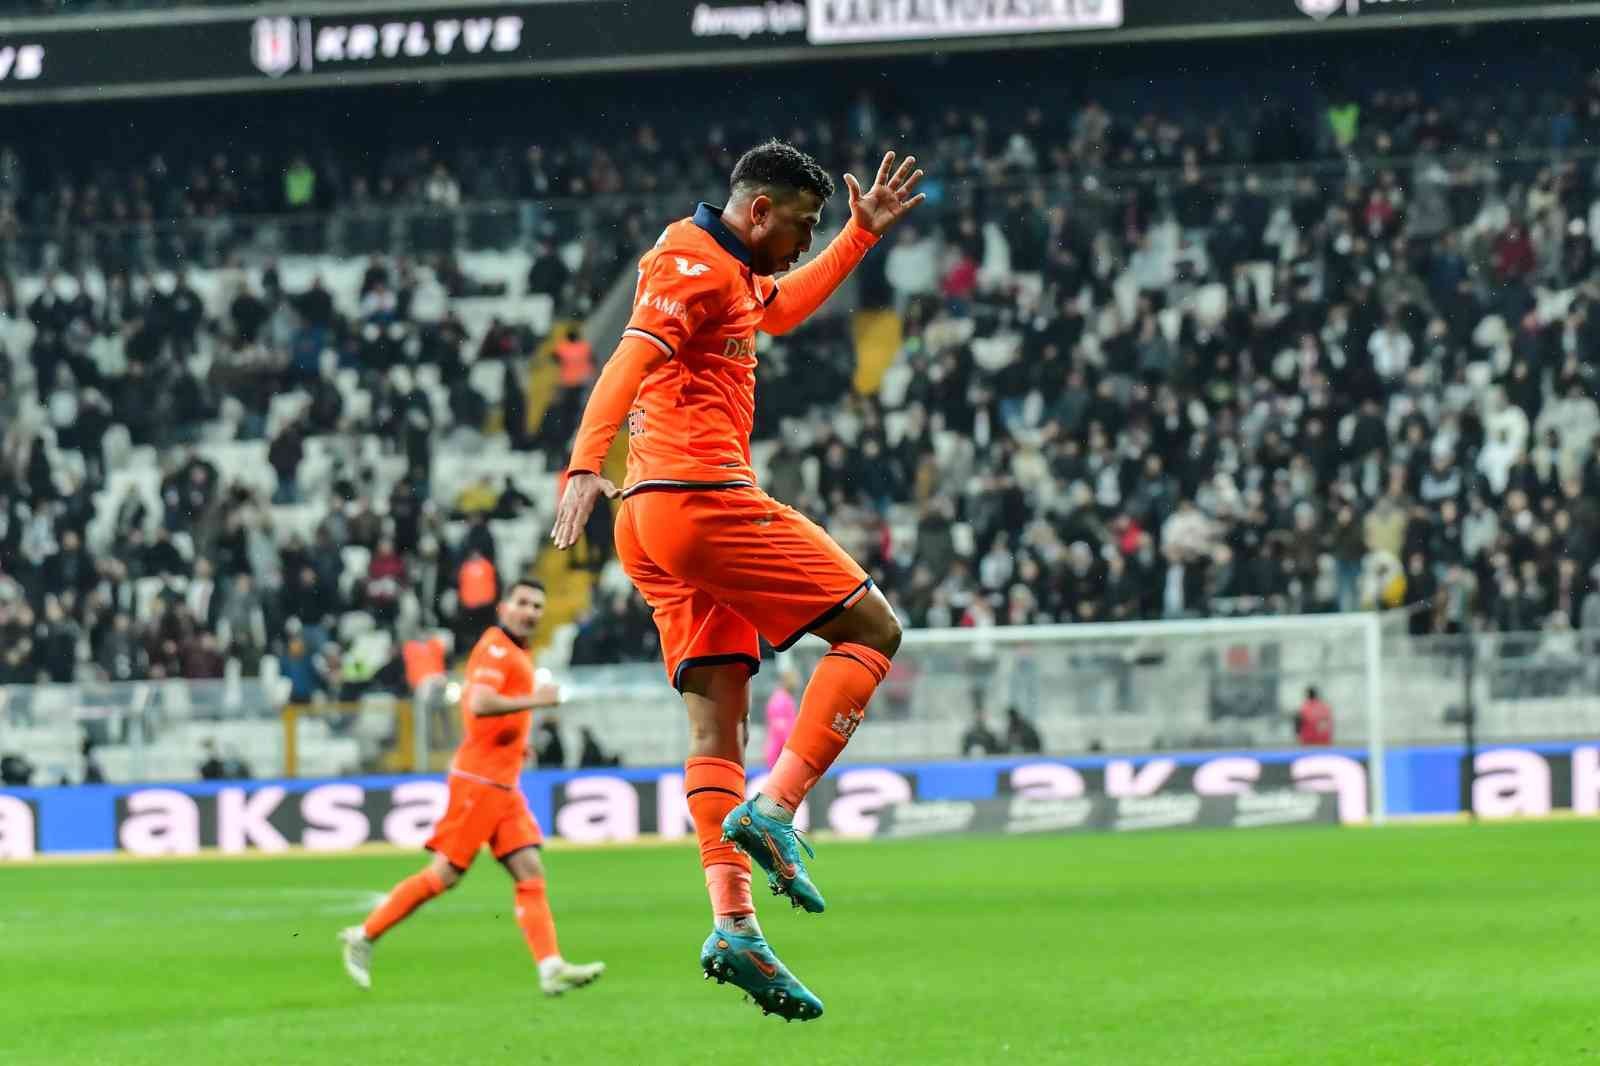 Trezeguet’ten 4 maçta 4 gol #istanbul